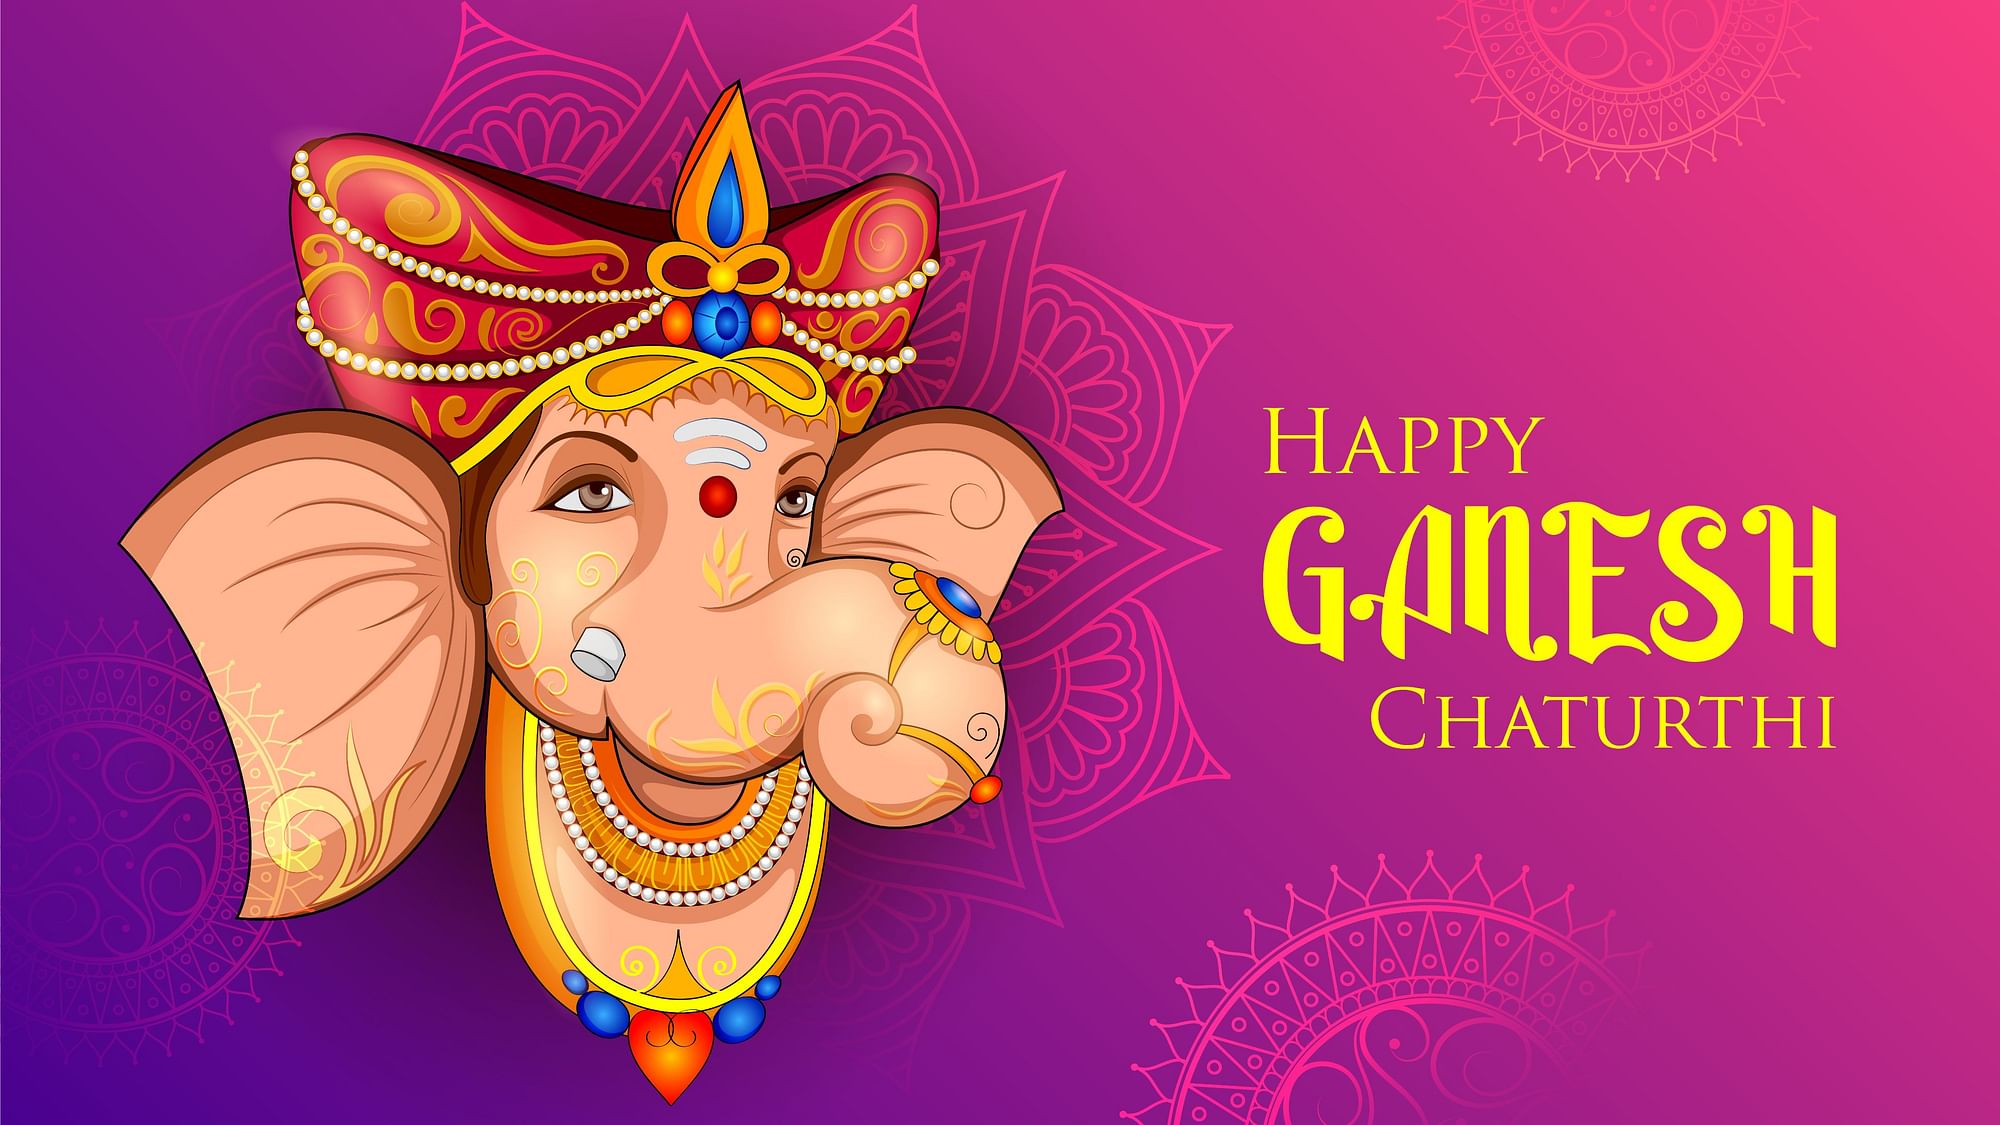 Ganesh Chaturthi 2020 Wishes In English Hindi Happy Ganesh Utsav Wishes Status Images 8829